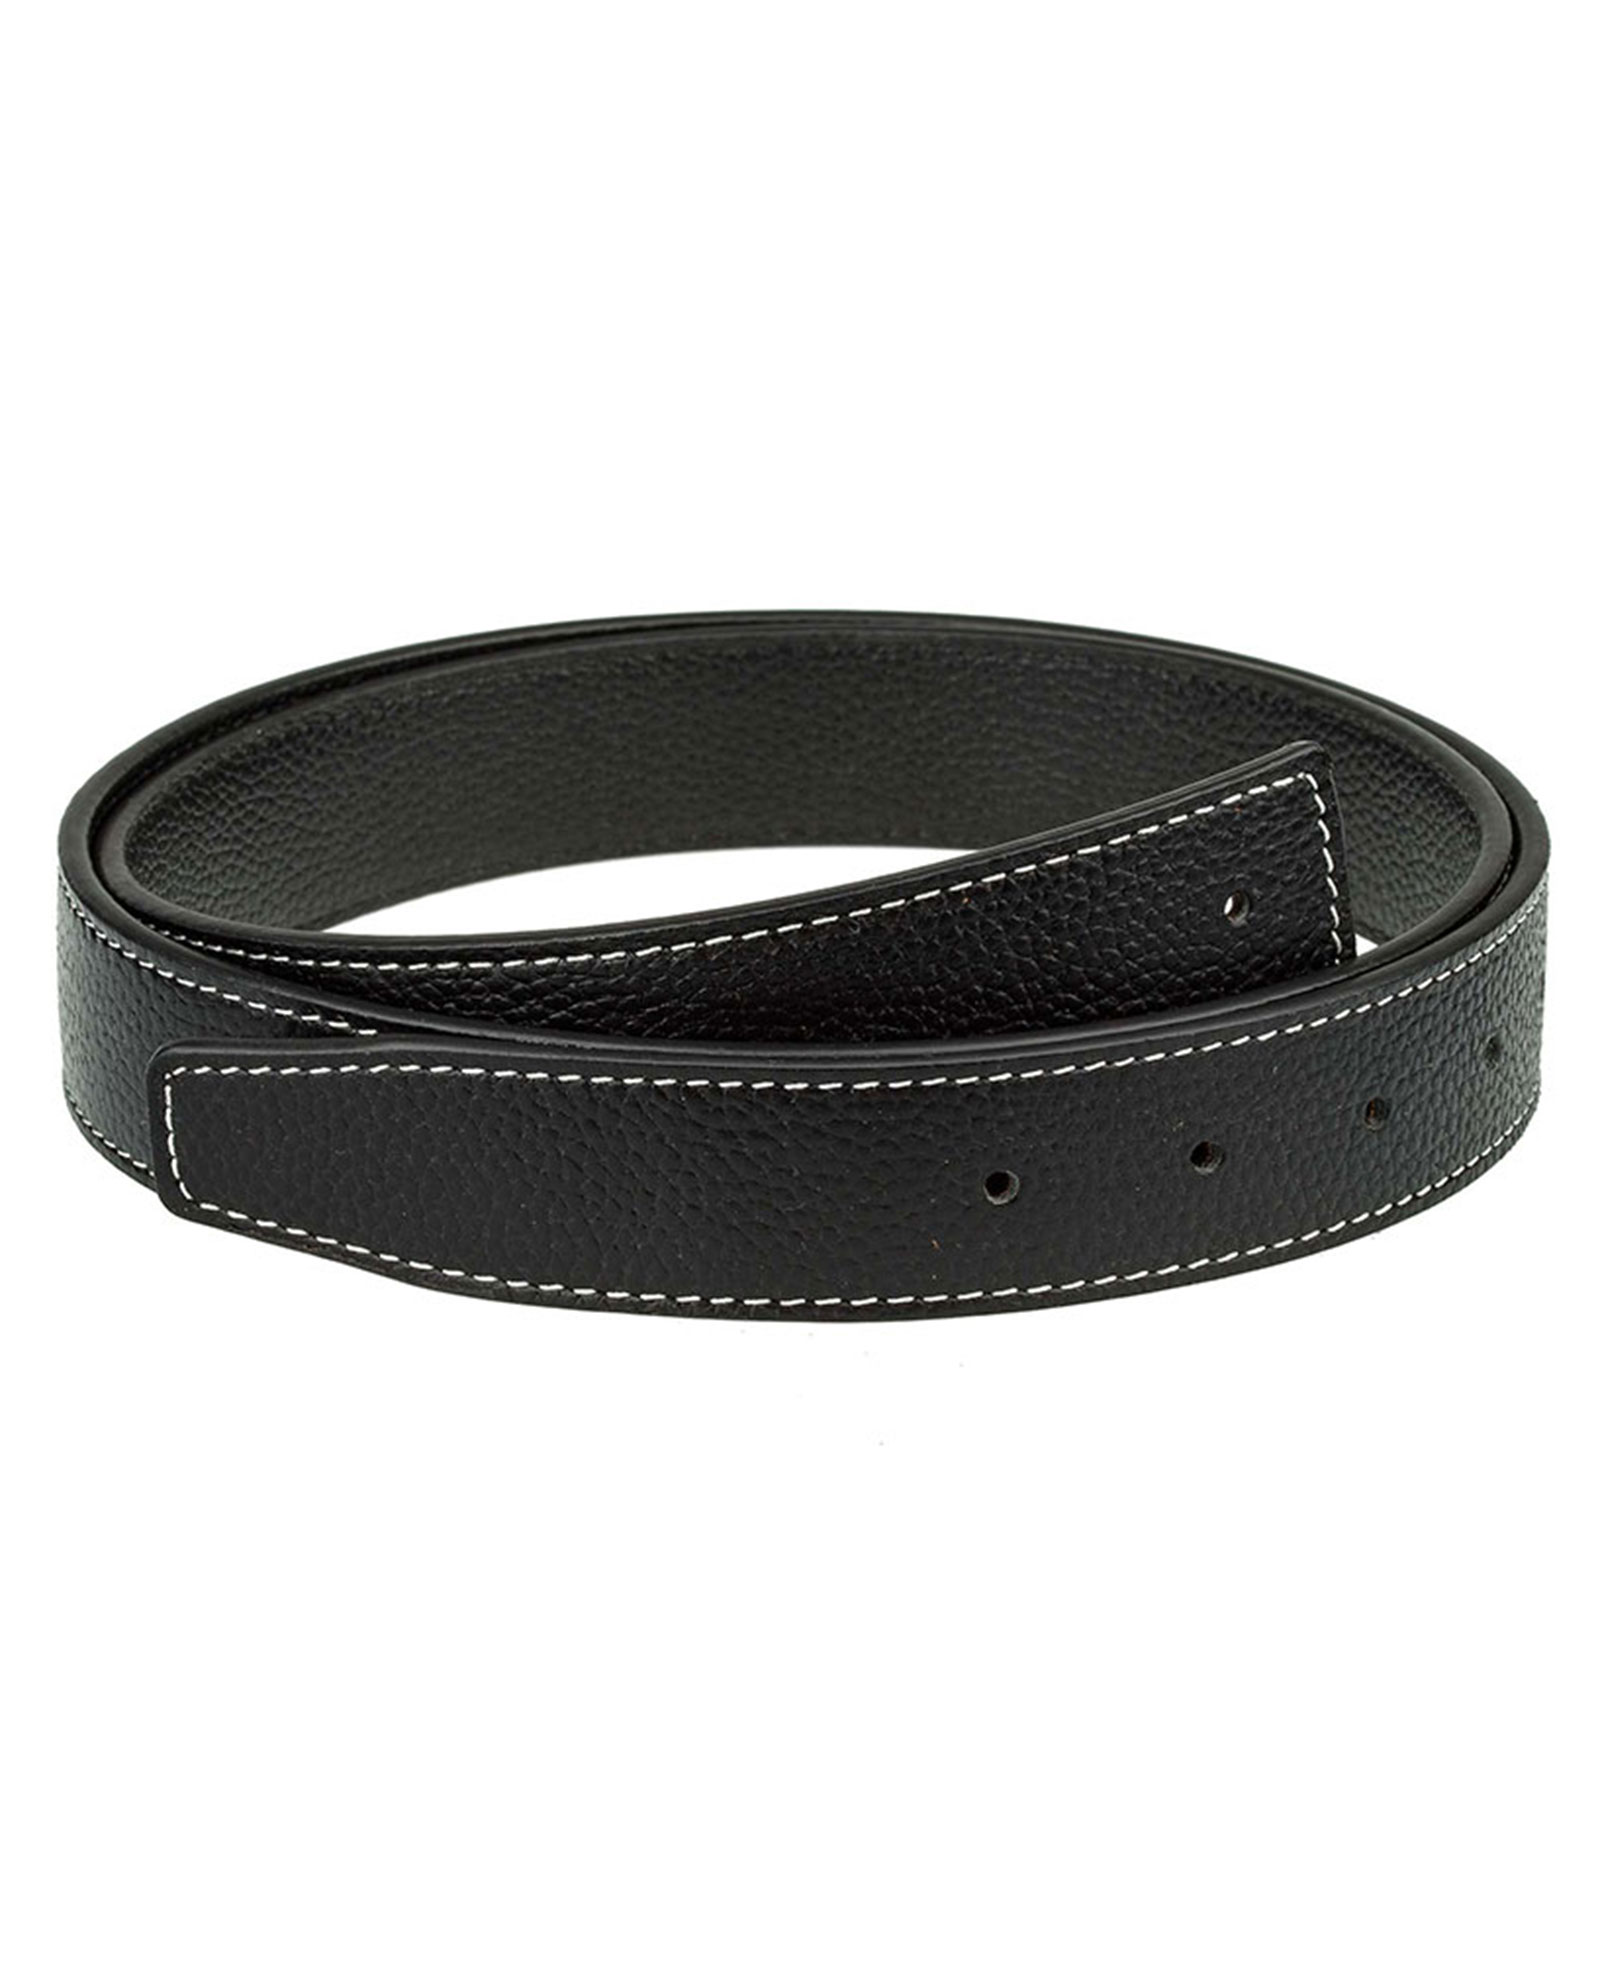 Buy Black H Belt Strap | For 32 mm Buckles | LeatherBeltsOnline.com